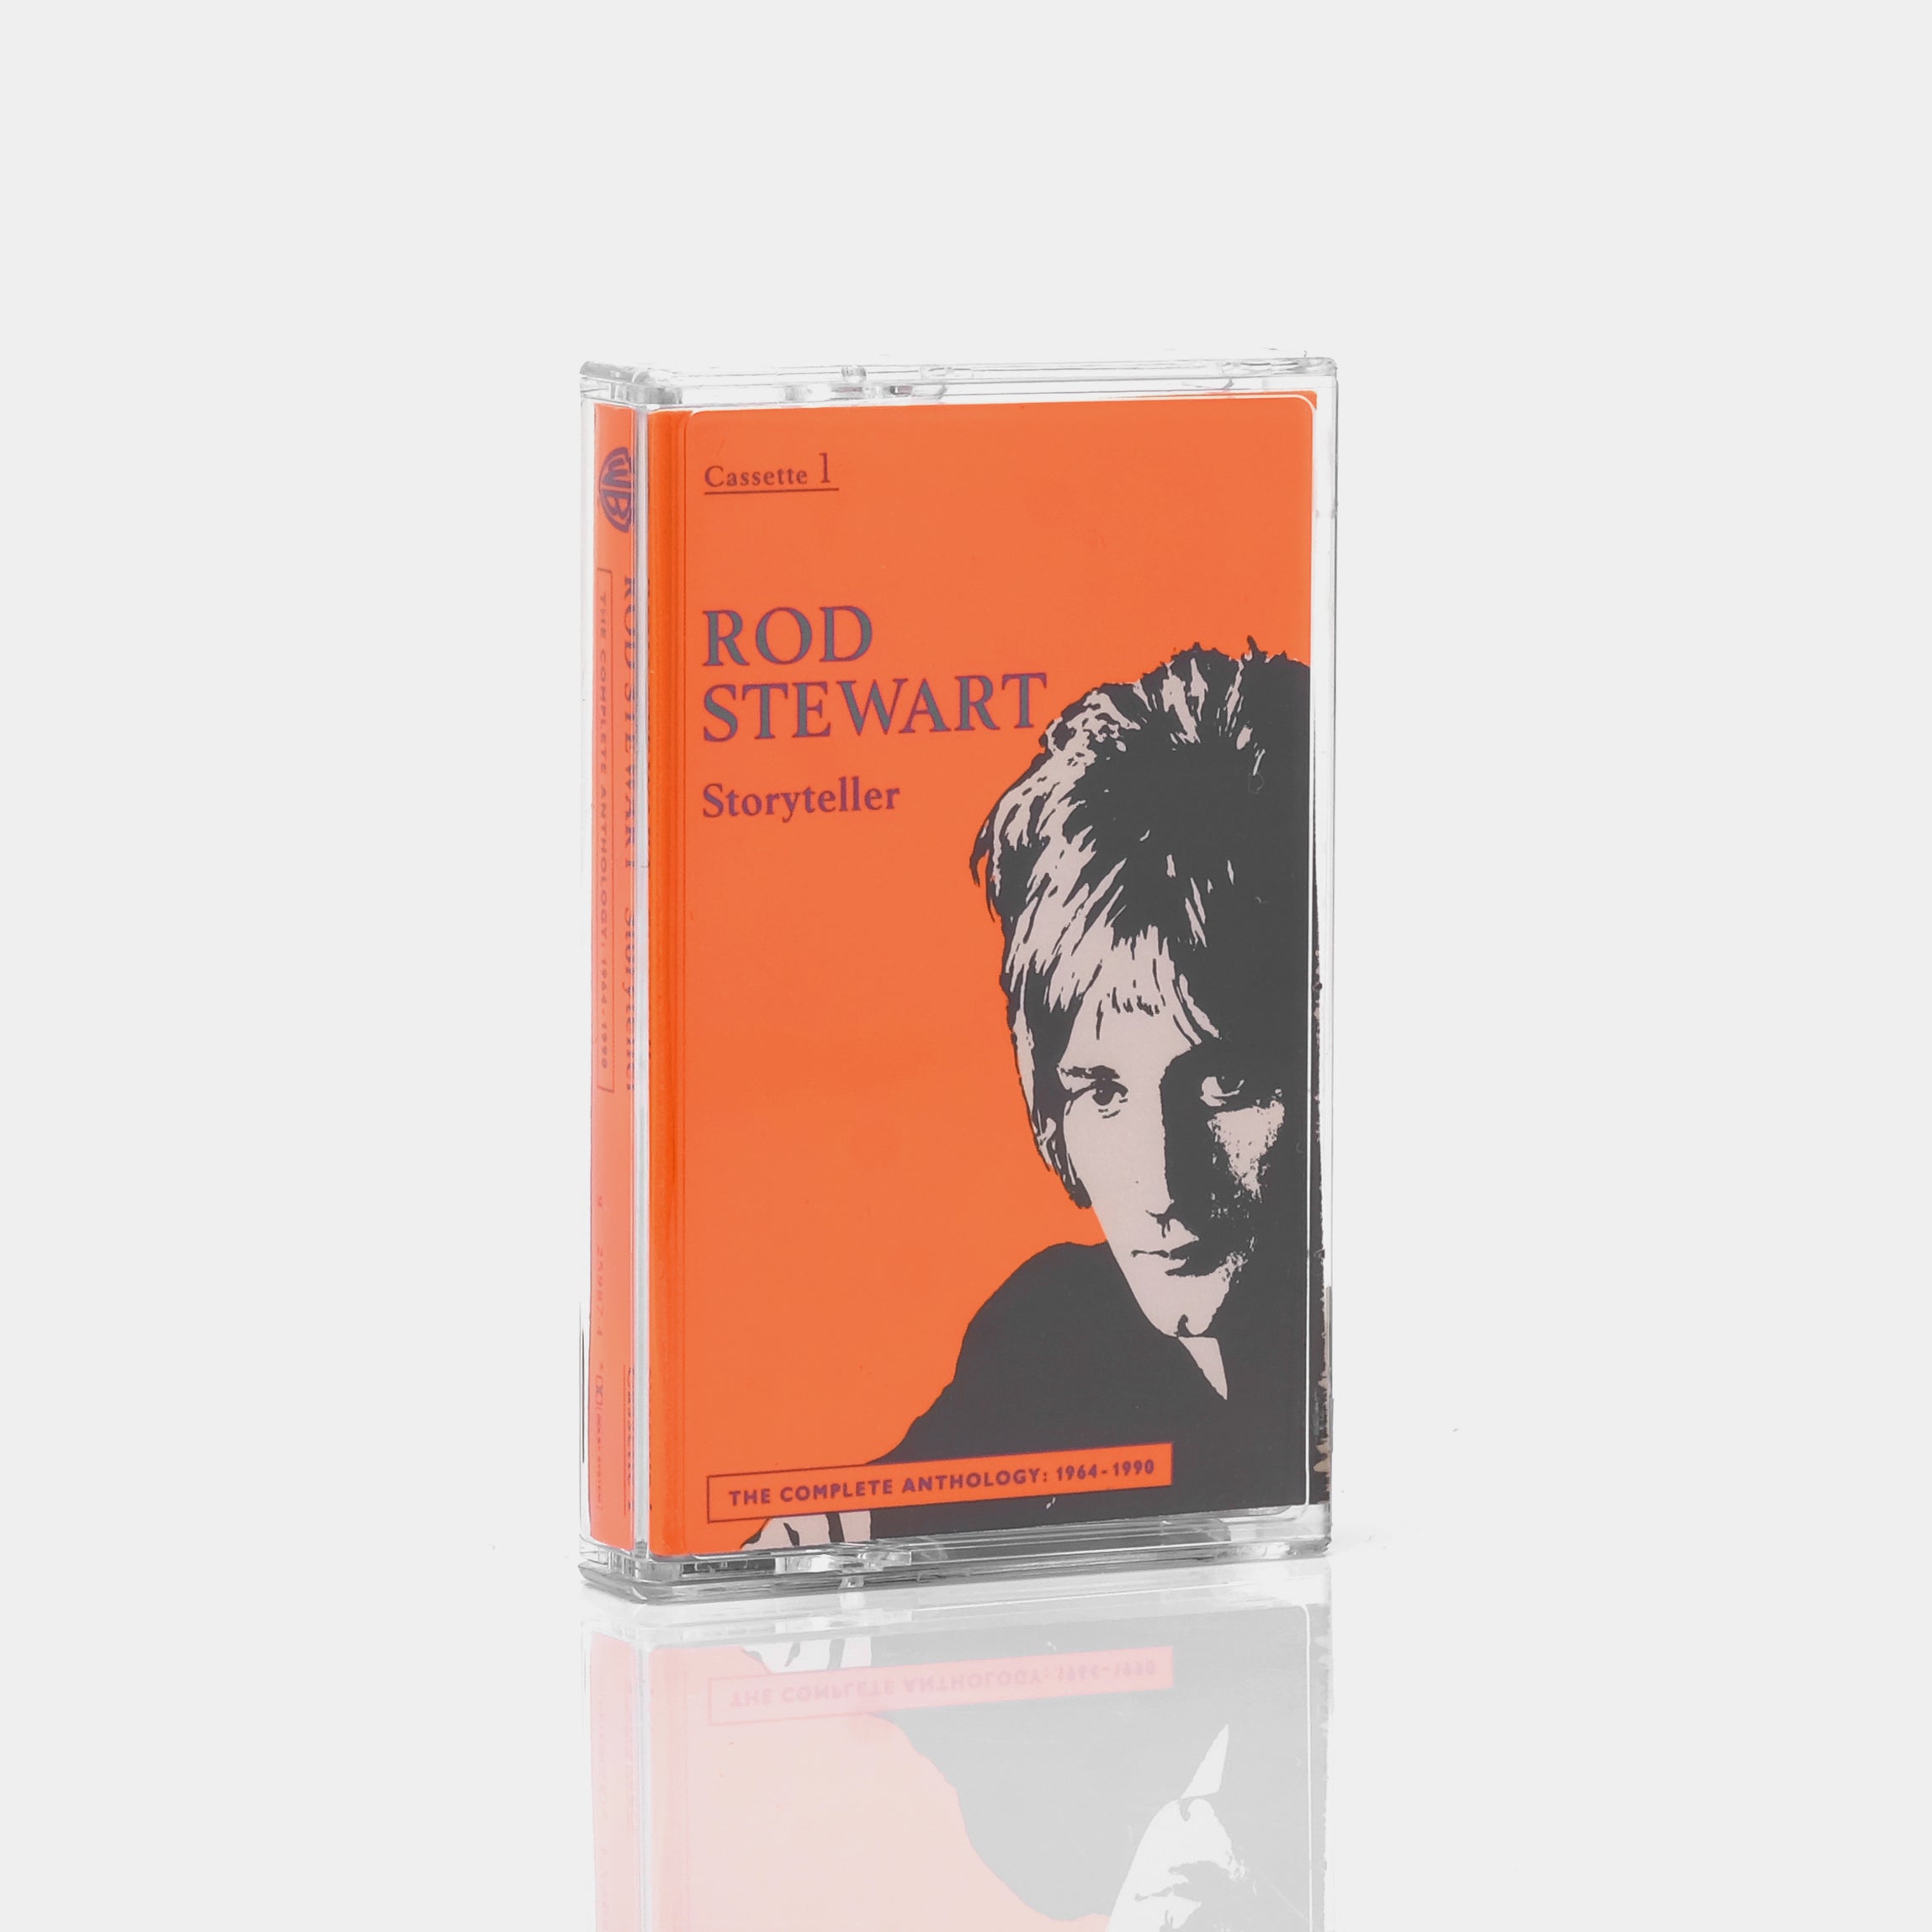 Rod Stewart - Storyteller: The Complete Anthology 1964-1990 Cassette Tape #1